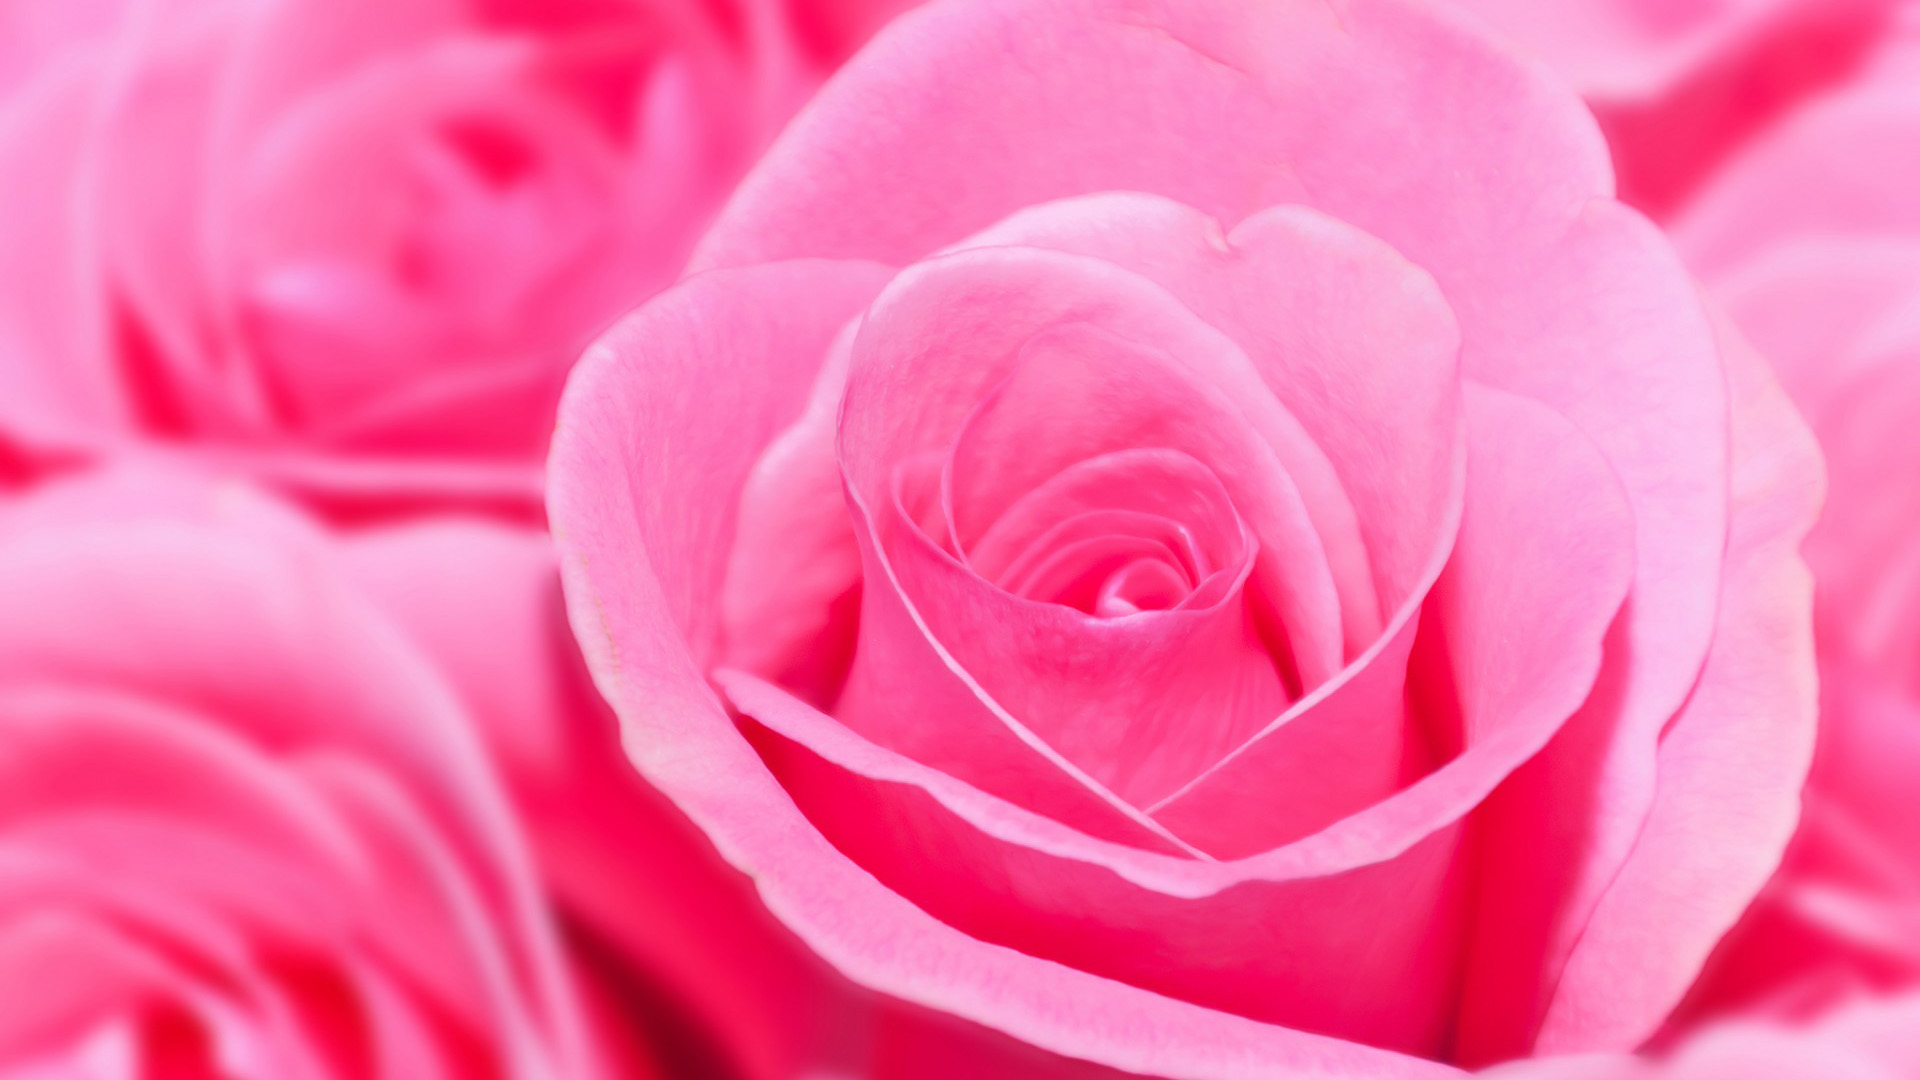 鲜花 玫瑰 粉红色花束壁纸 花卉壁纸 壁纸下载 彼岸桌面